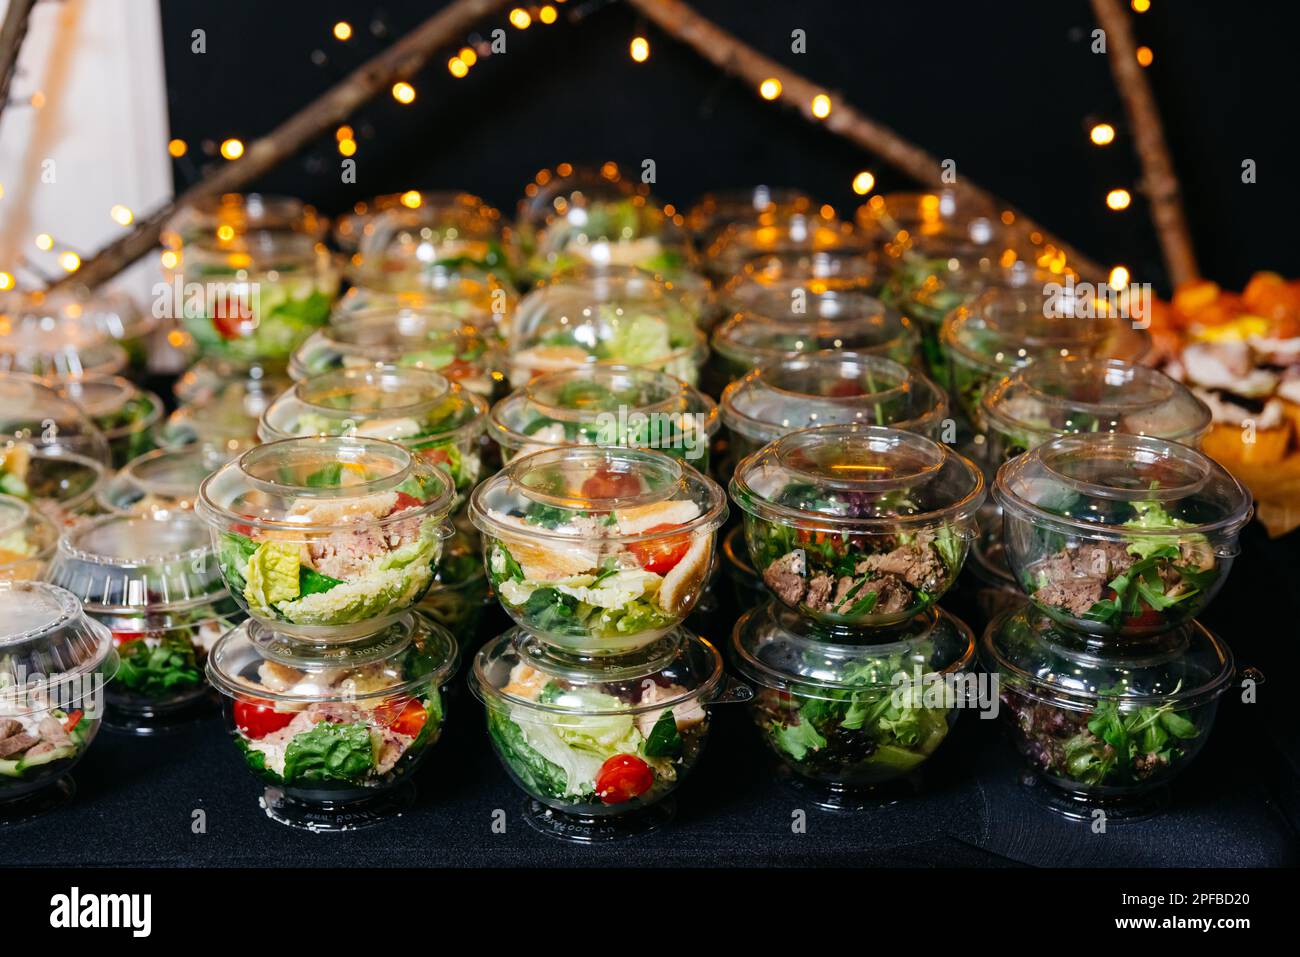 Viele Portionen verschiedener Salate mit Fleisch und Gemüse in Plastiktellern mit Deckeln. Сatering Portionen Salate auf dem Tisch servieren. Büfett Stockfoto